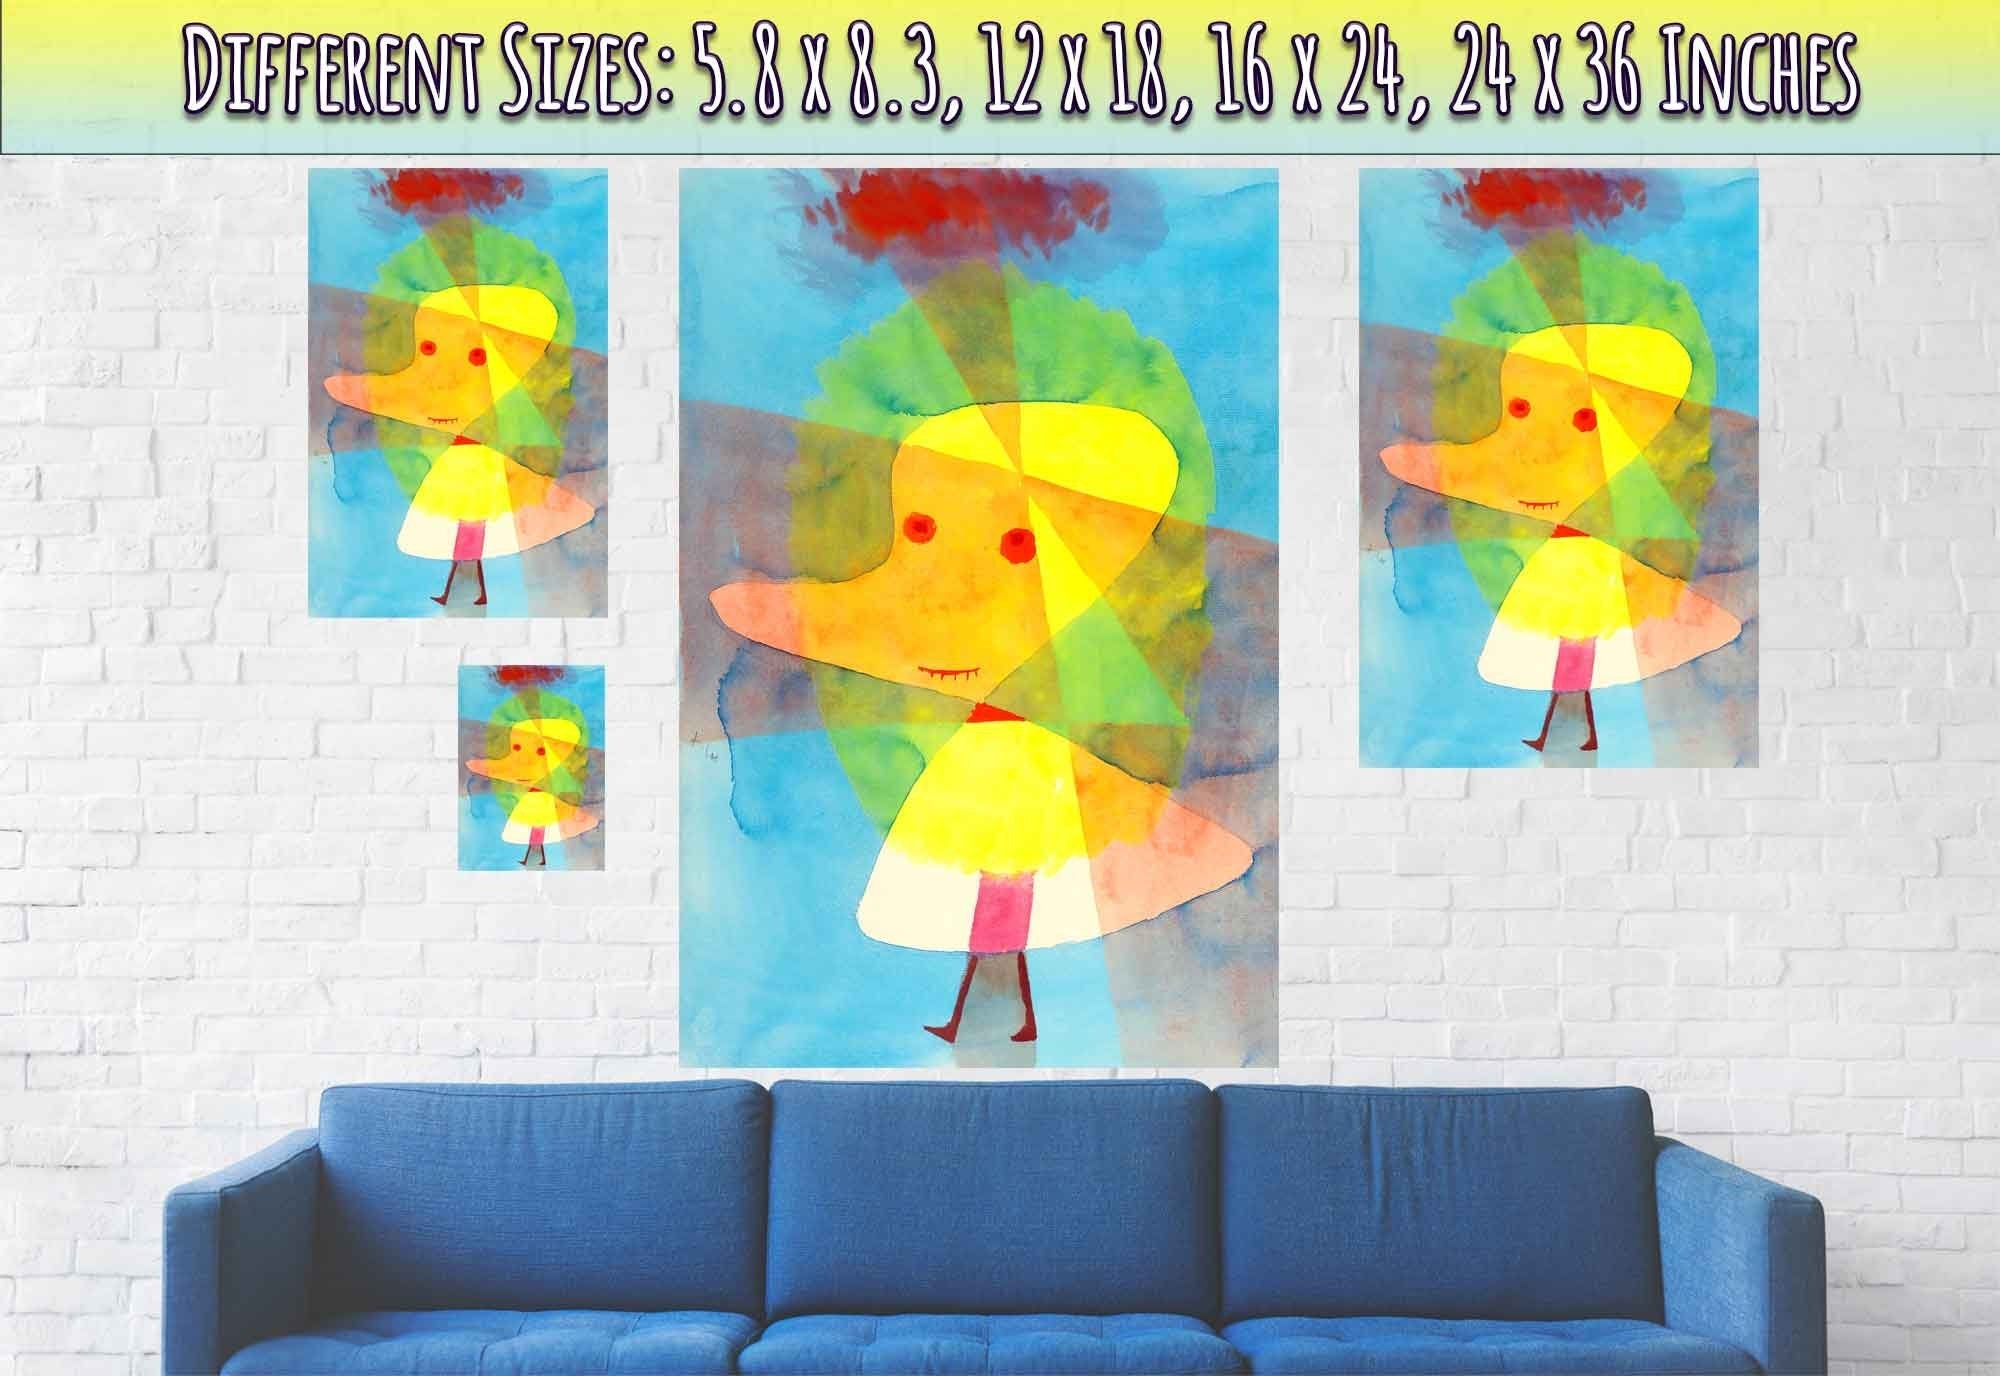 Rubber Duck Poster, Paul Klee Small Garden Ghost Print, Paul Klee Prints Abstract Art - WallArtPrints4U